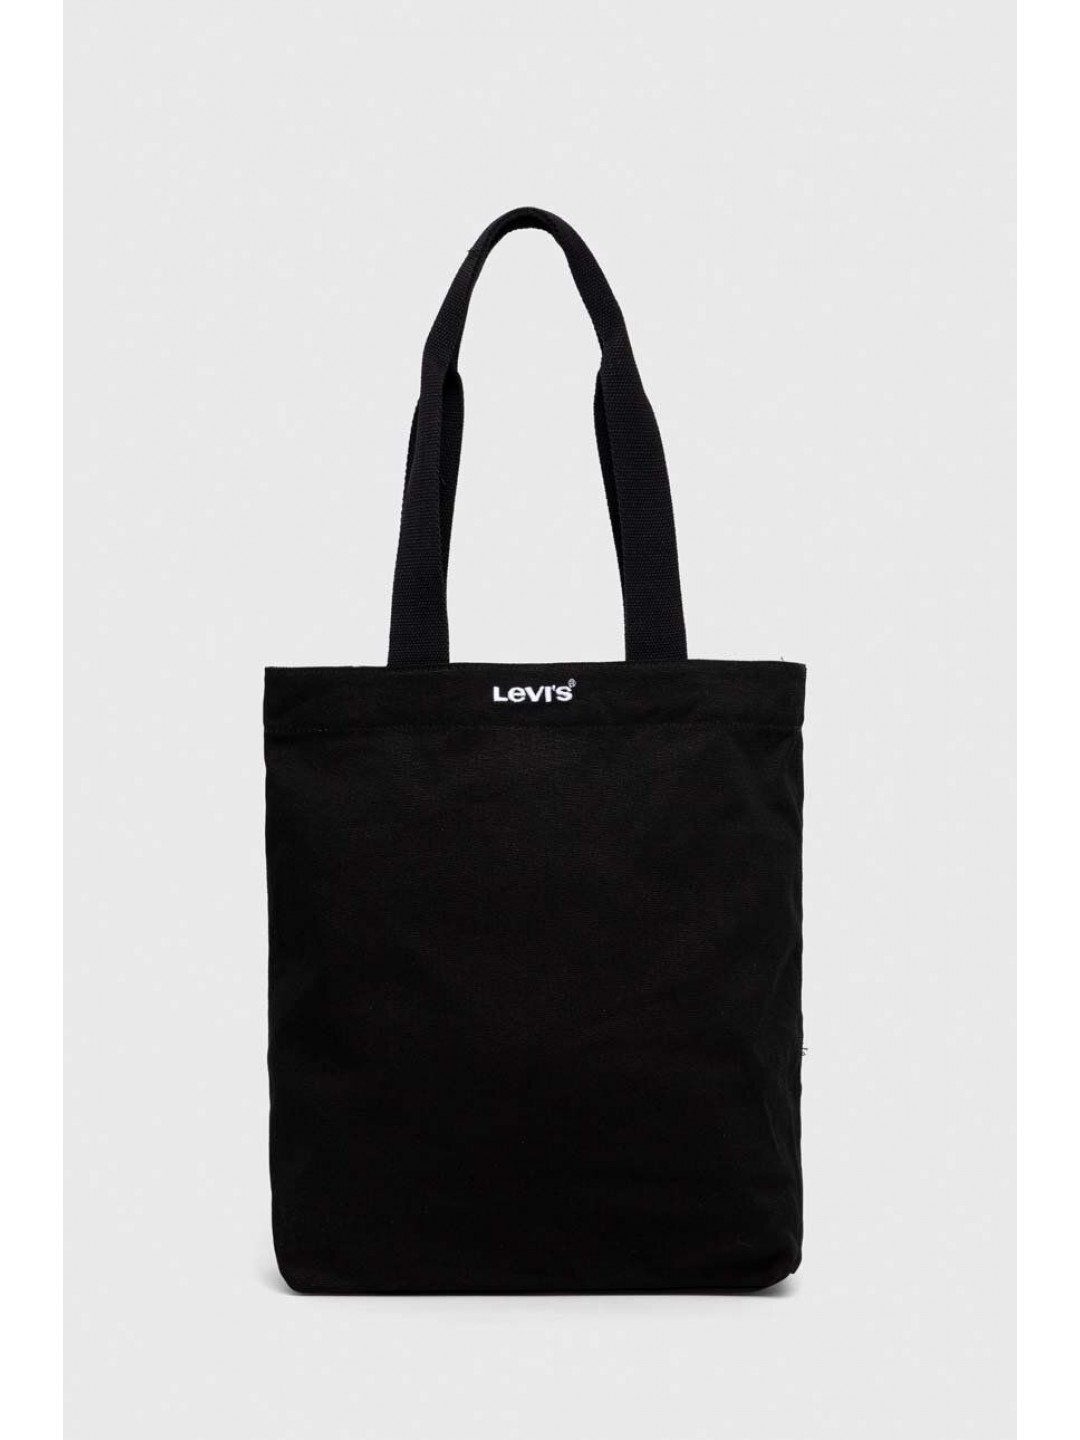 Bavlněná kabelka Levi s černá barva